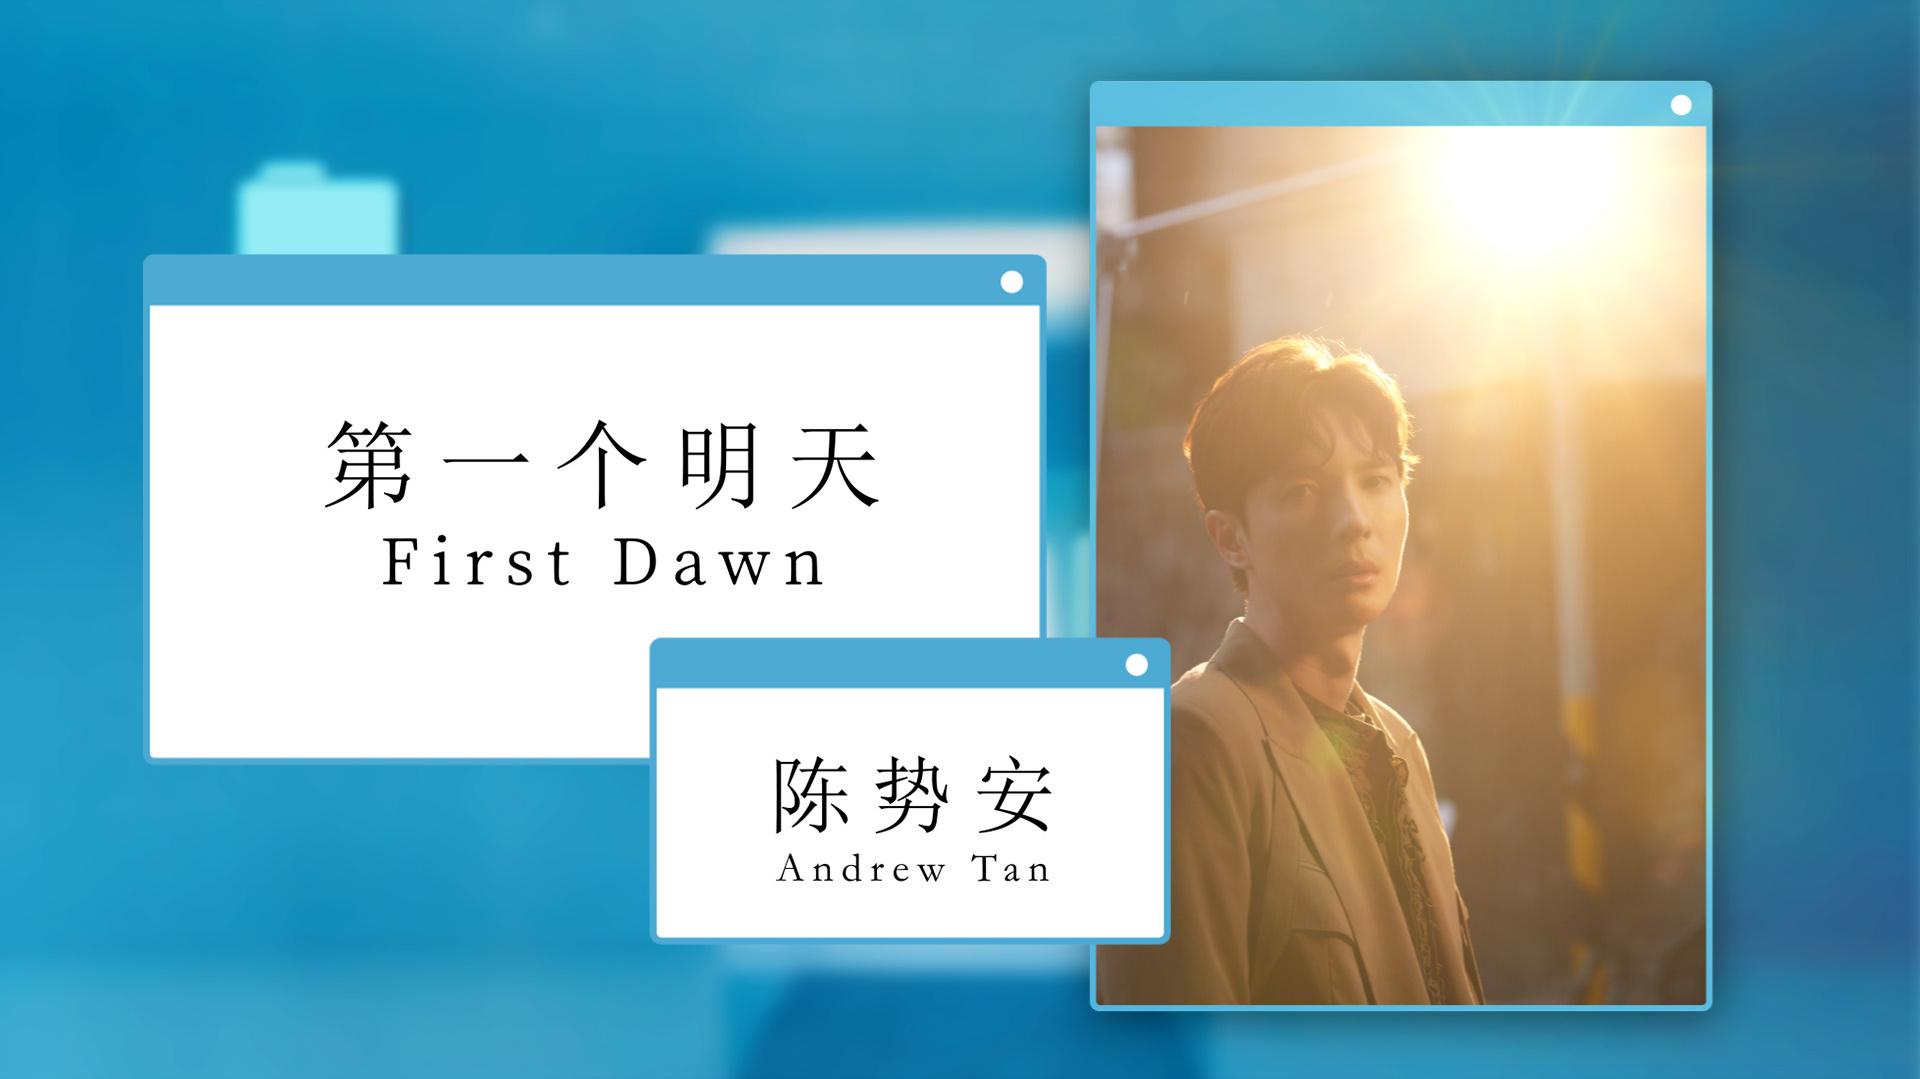 陈势安 - 第一个明天 First Dawn